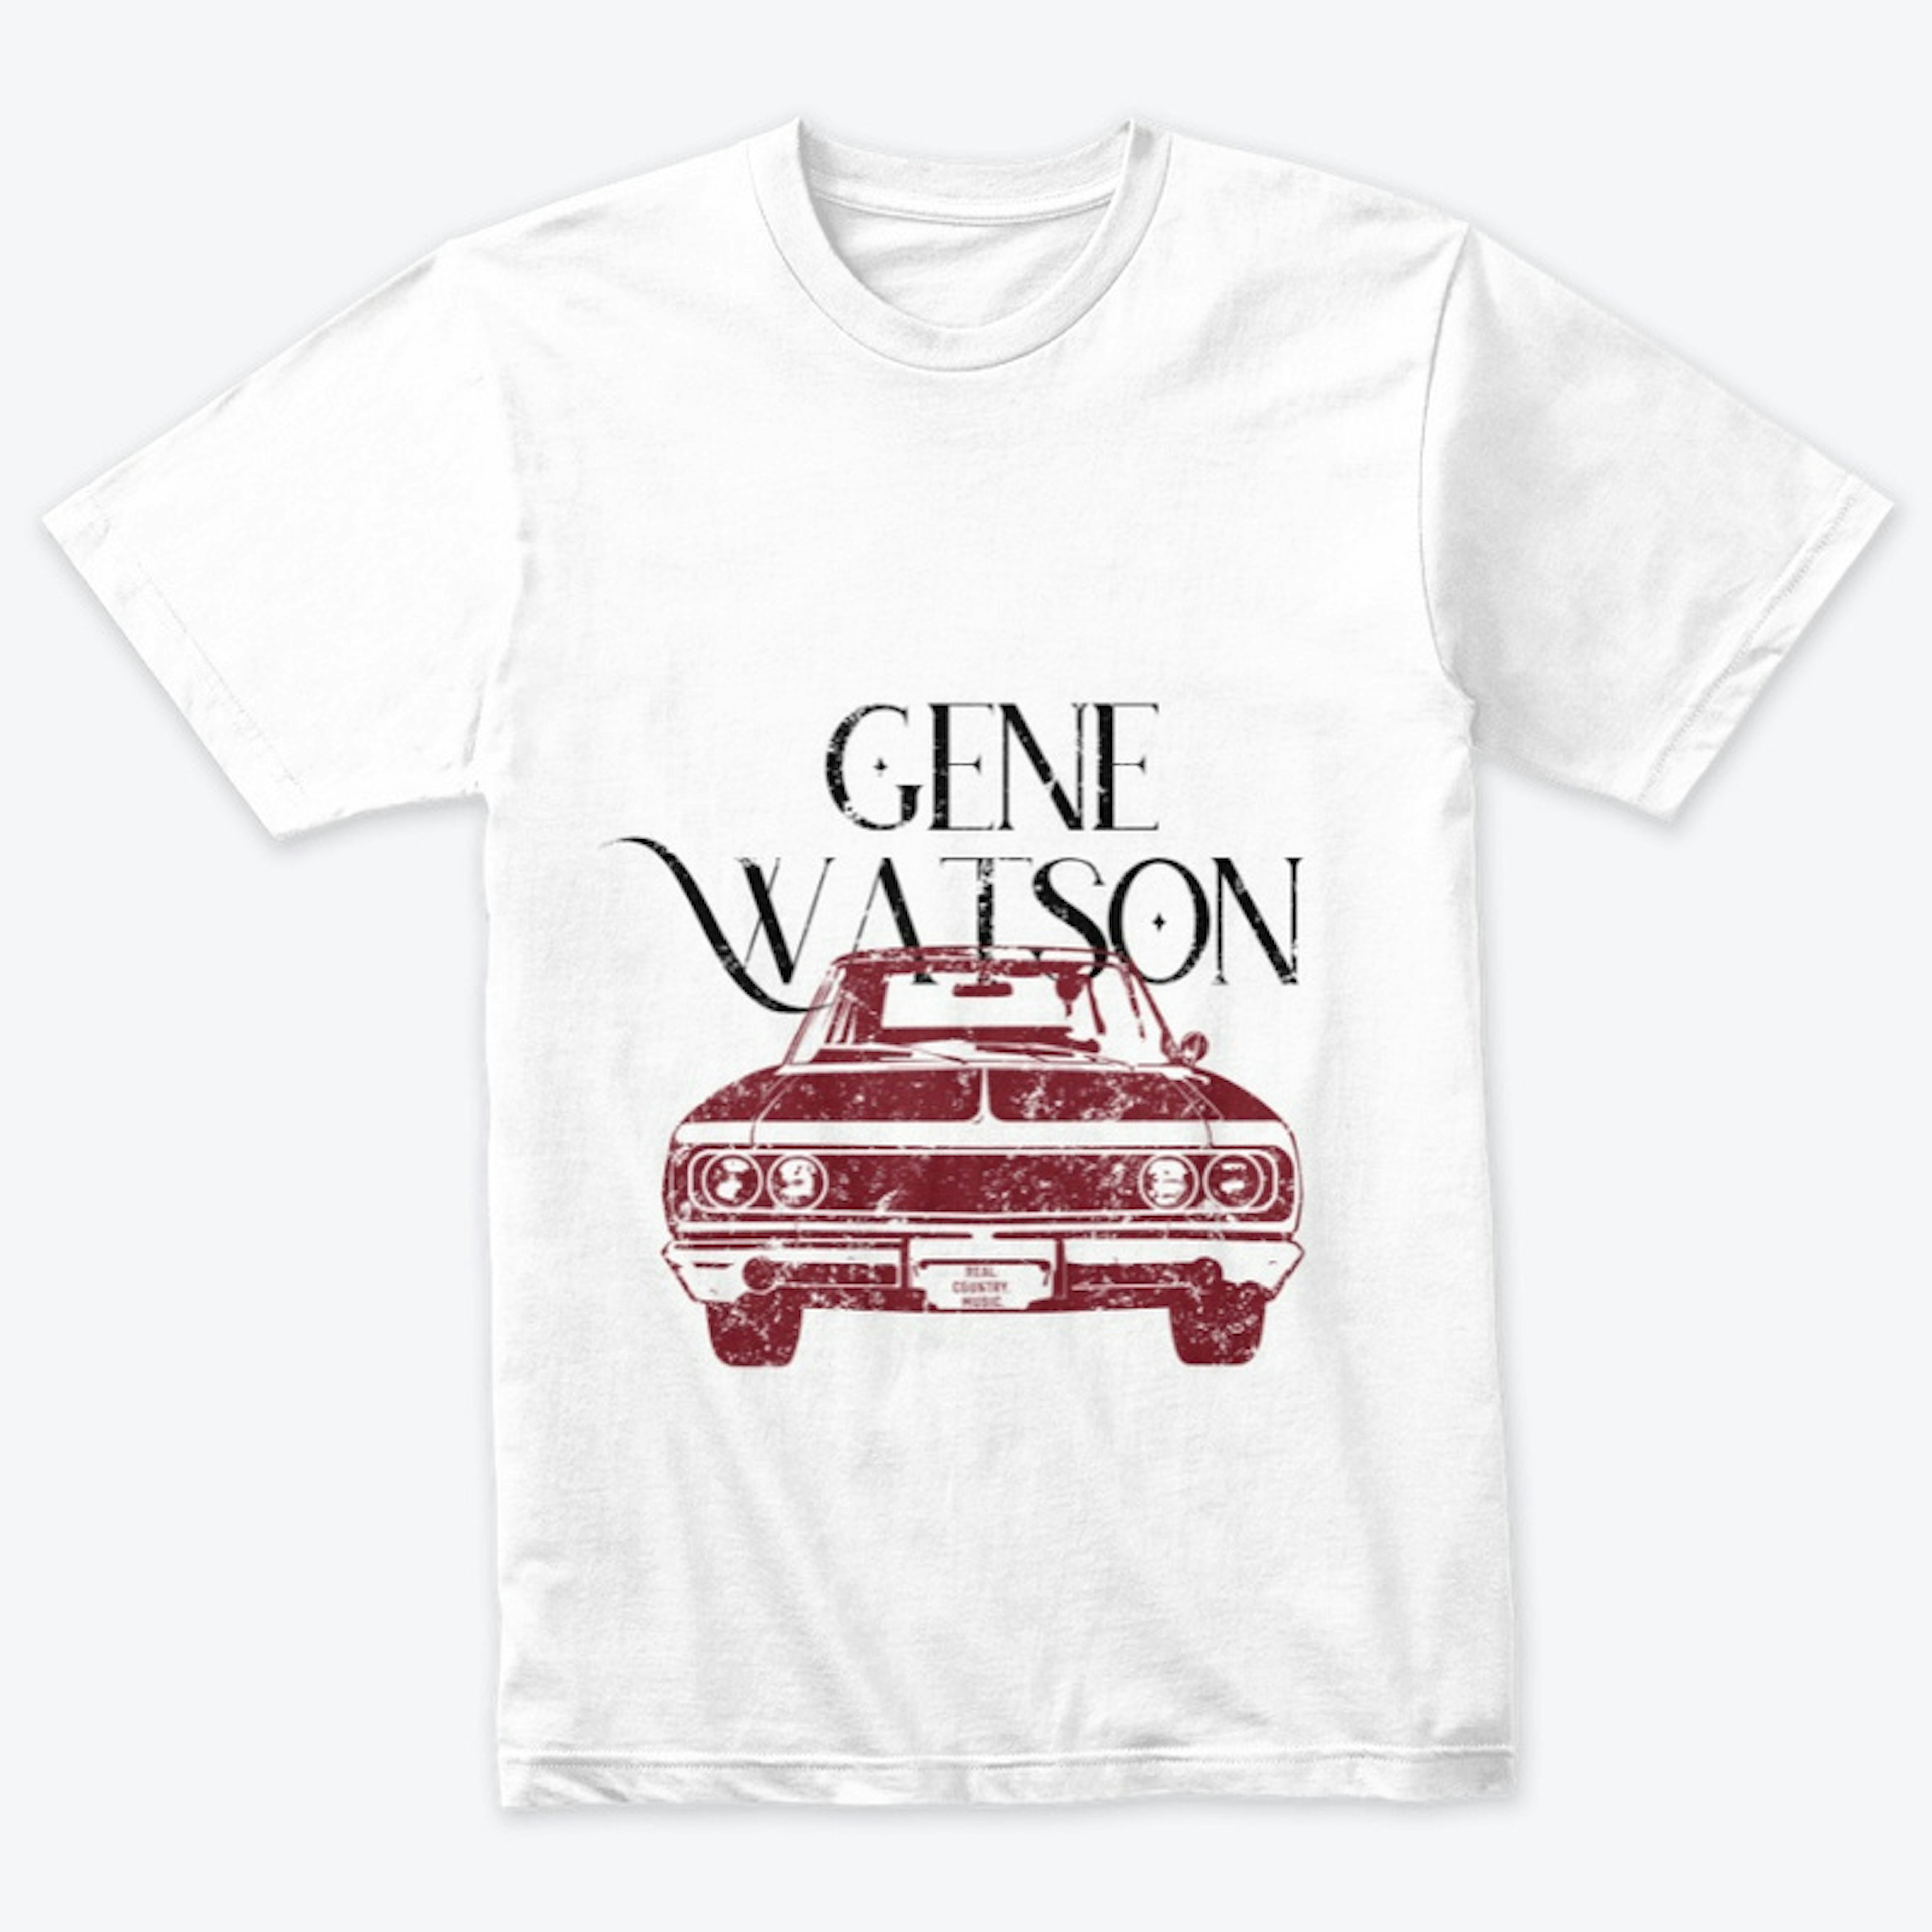 Gene Watson Iconic Tee